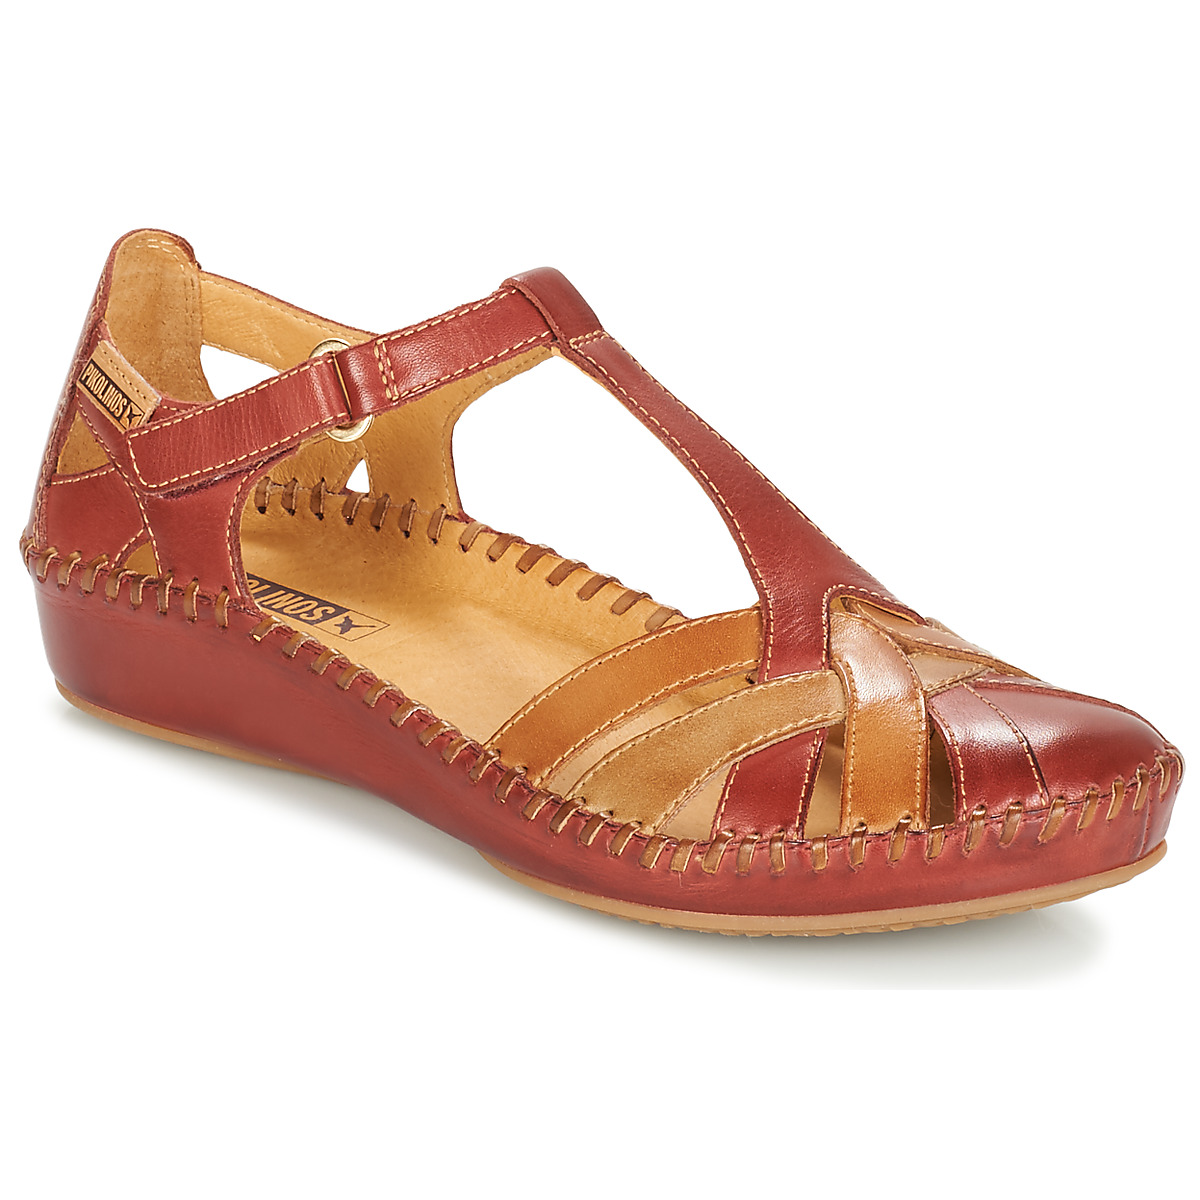 VALLARTA 655-0575 de Pikolinos de color Marrón Mujer Zapatos de Tacones de Sandalias con cuña P 